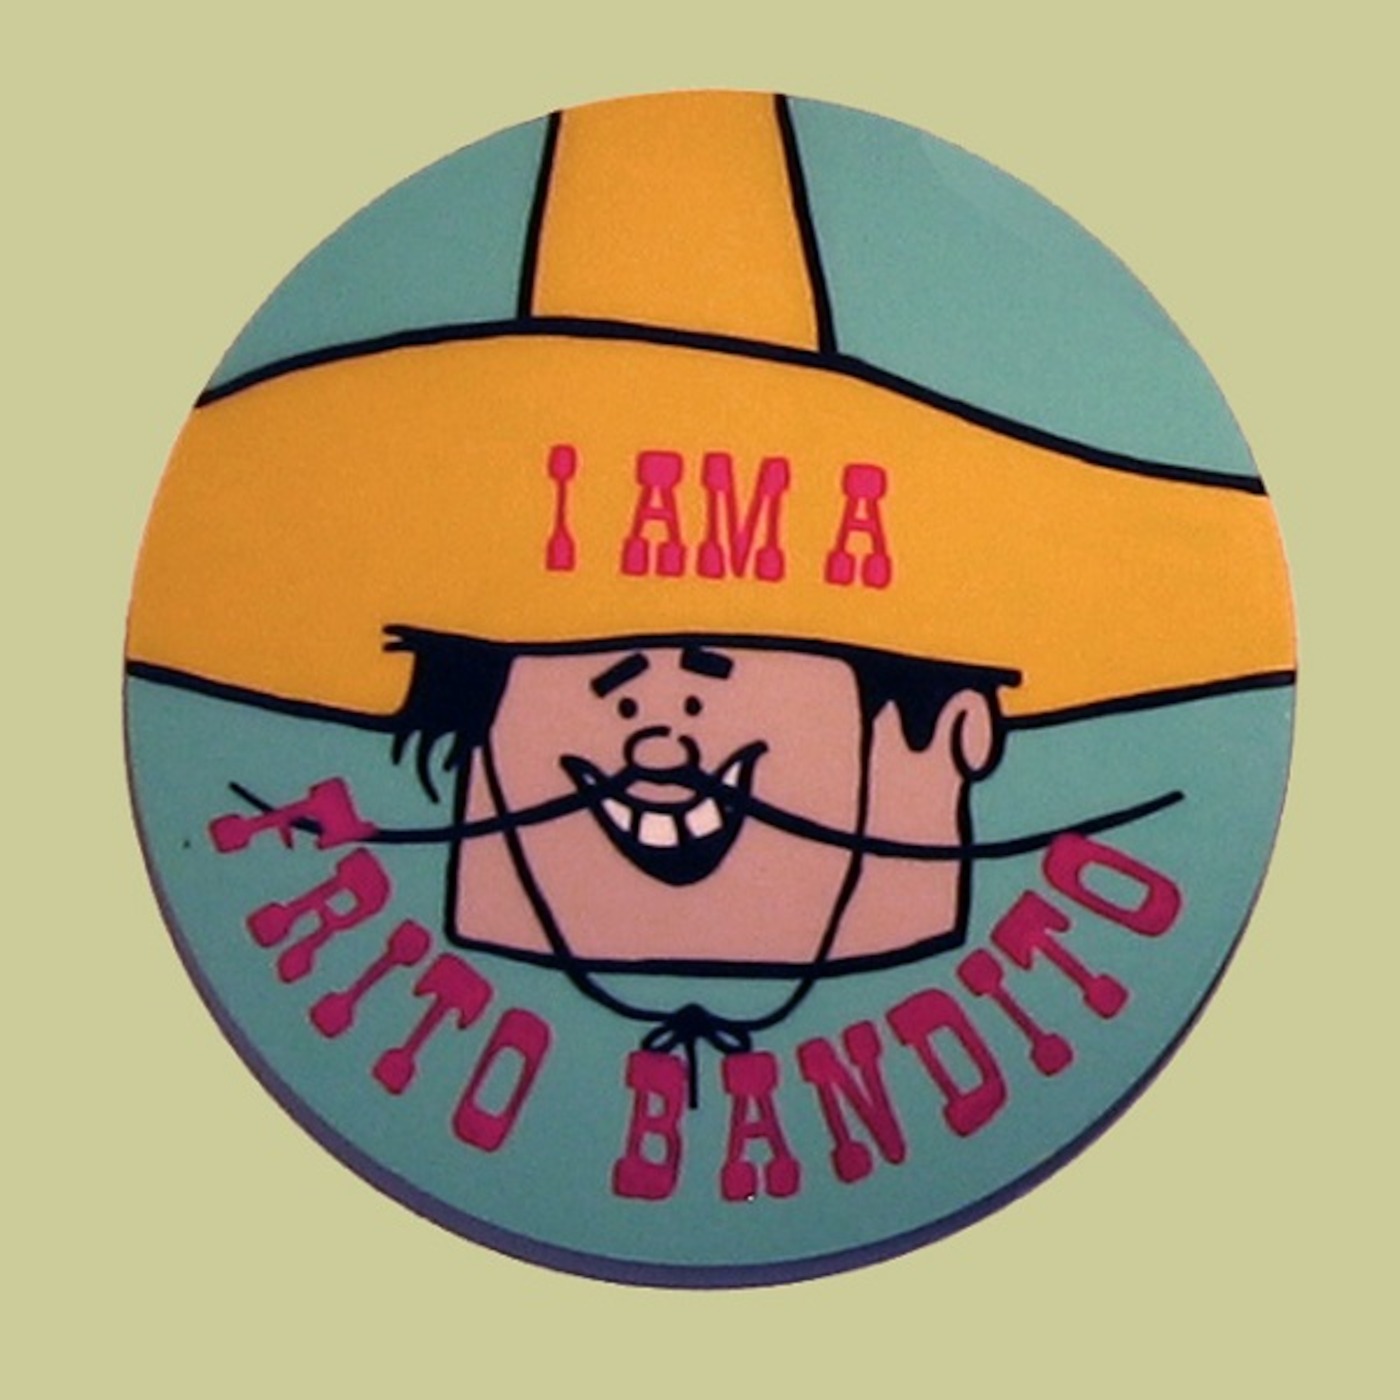 Episode 8 - The Frito Bandito